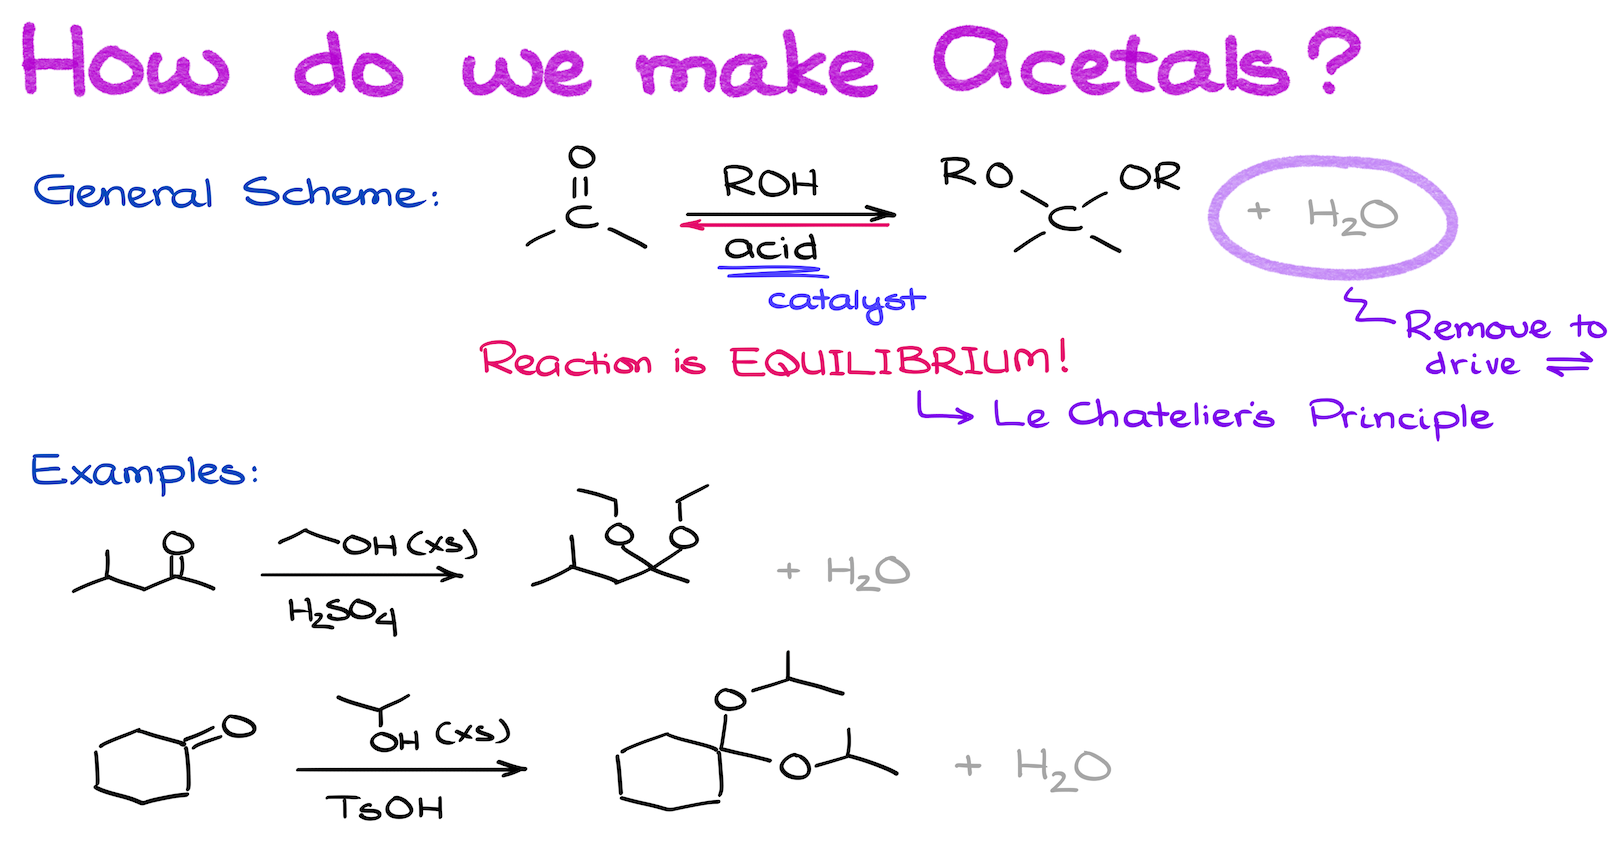 how we make acetals